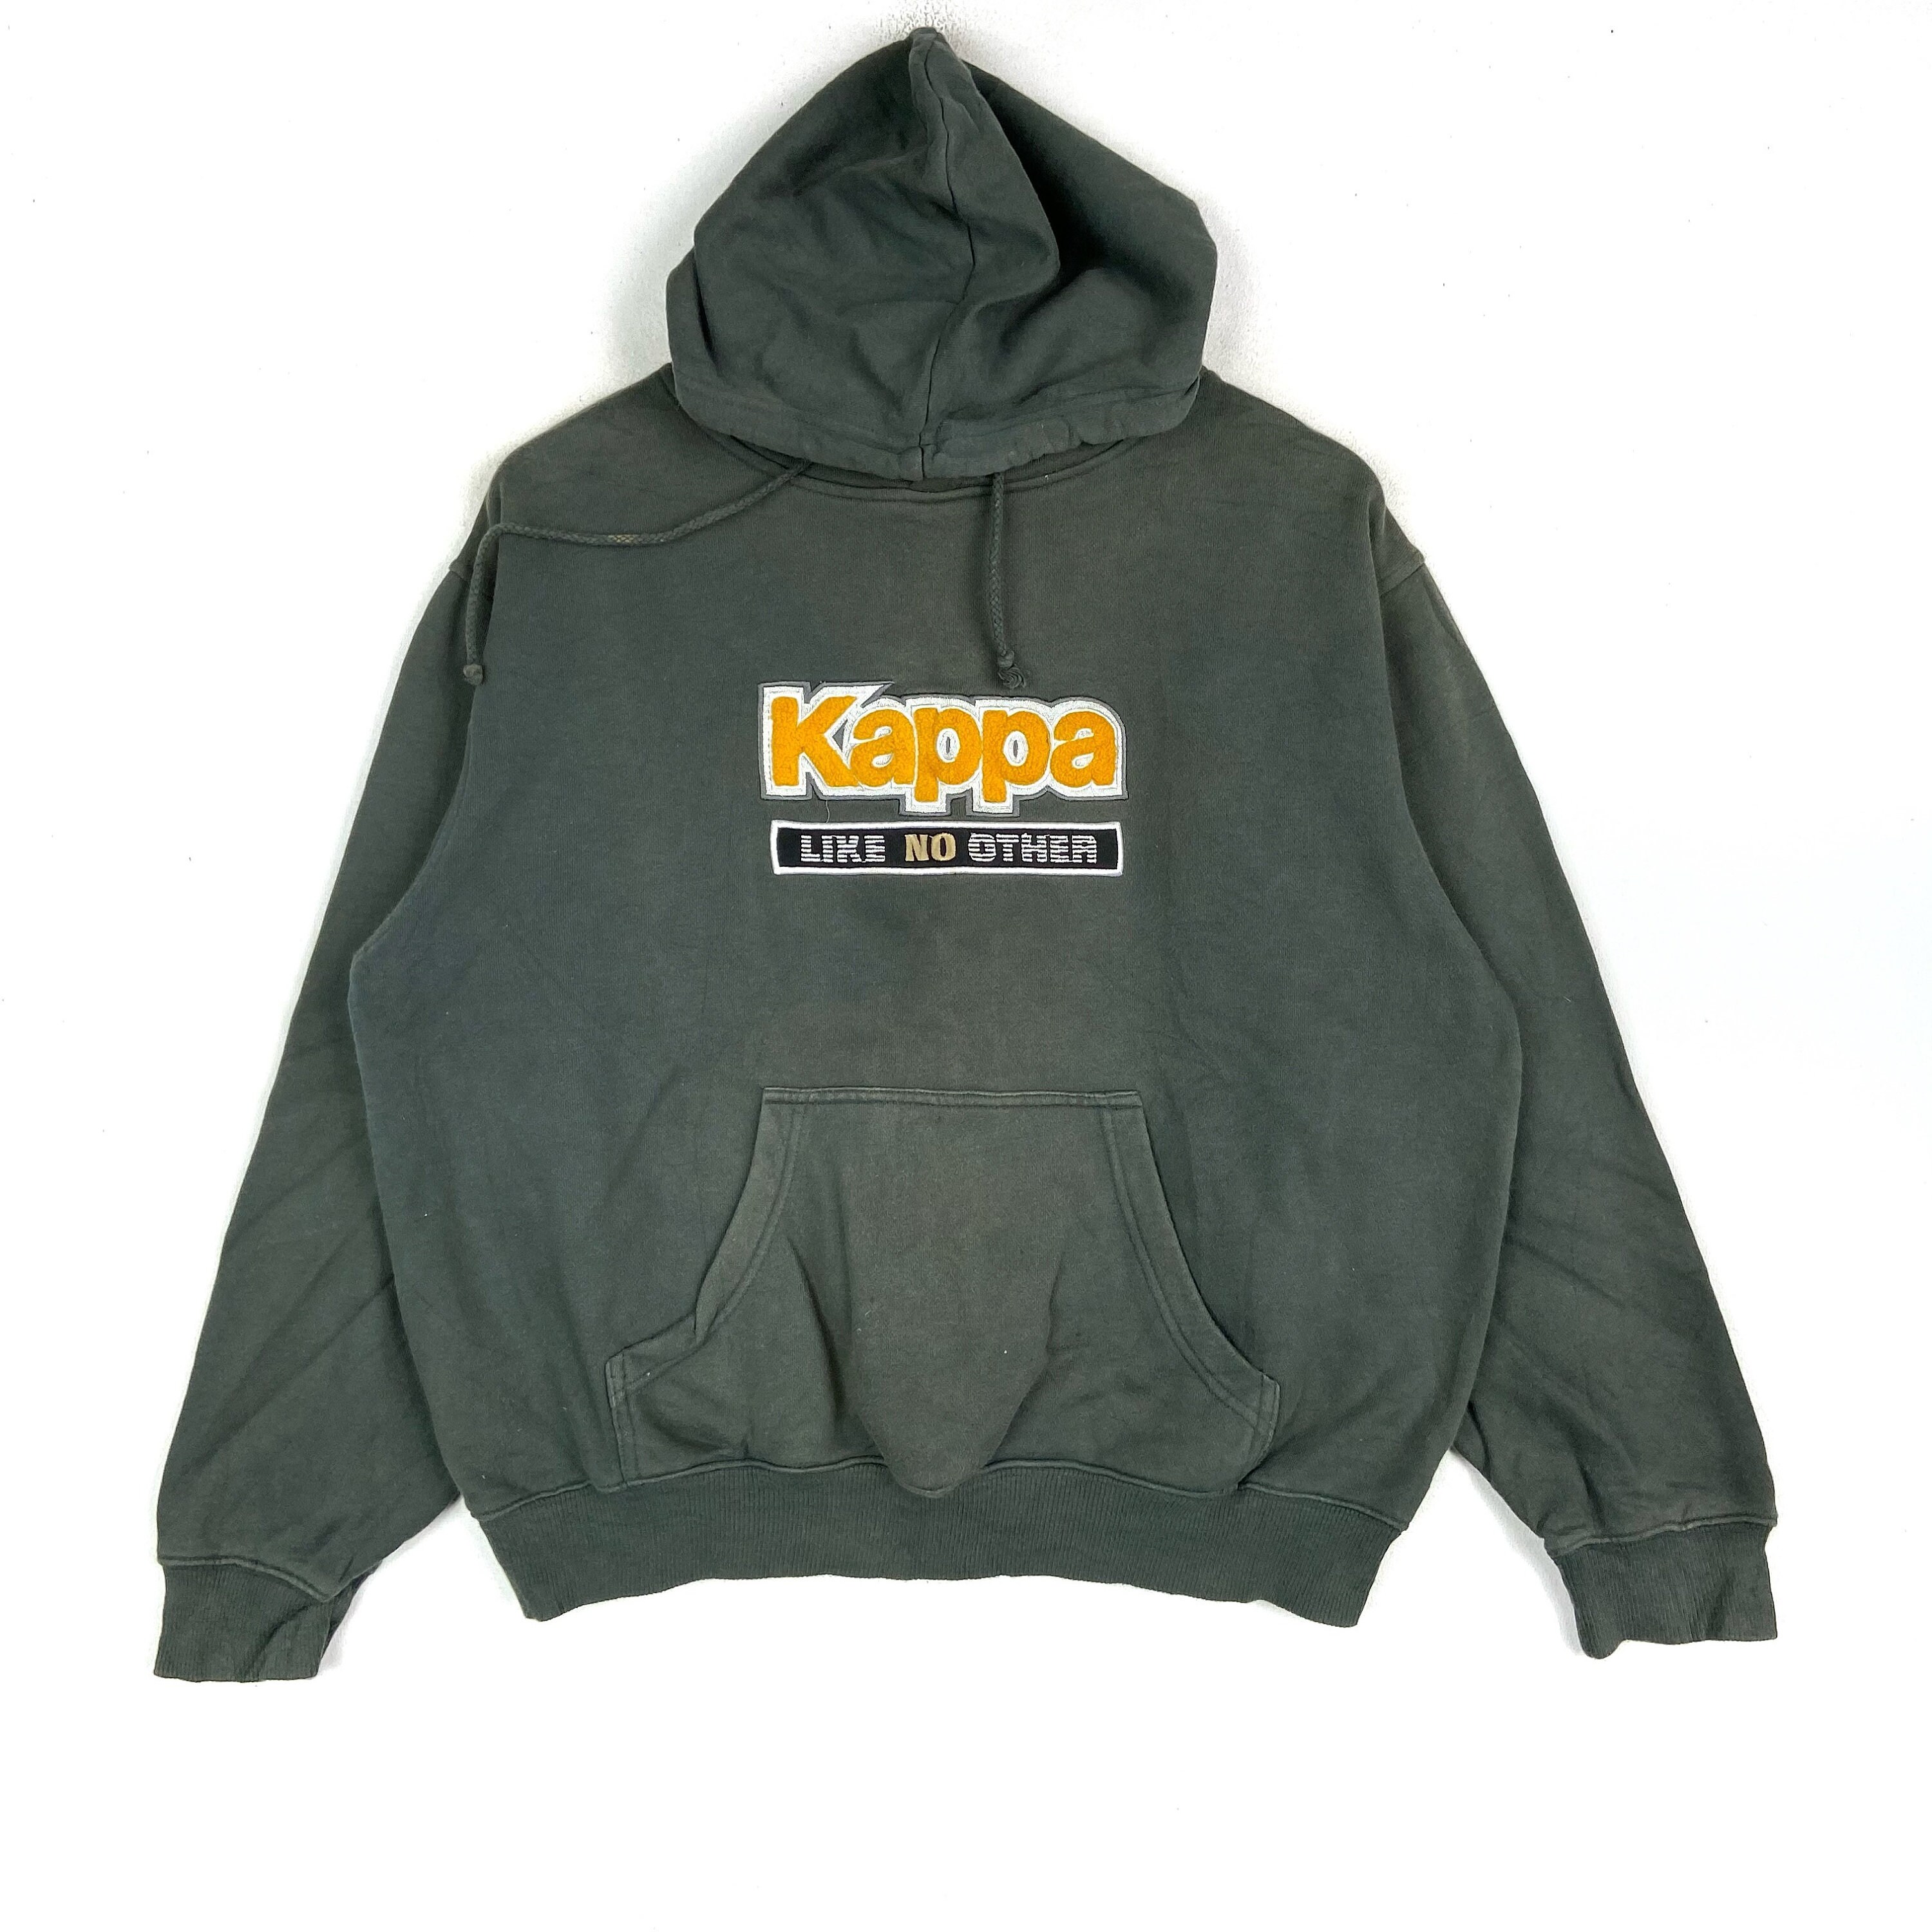 Vintage KAPPA Hoodies Big Logo Pullover Hiphop Swag Streetwear | Etsy